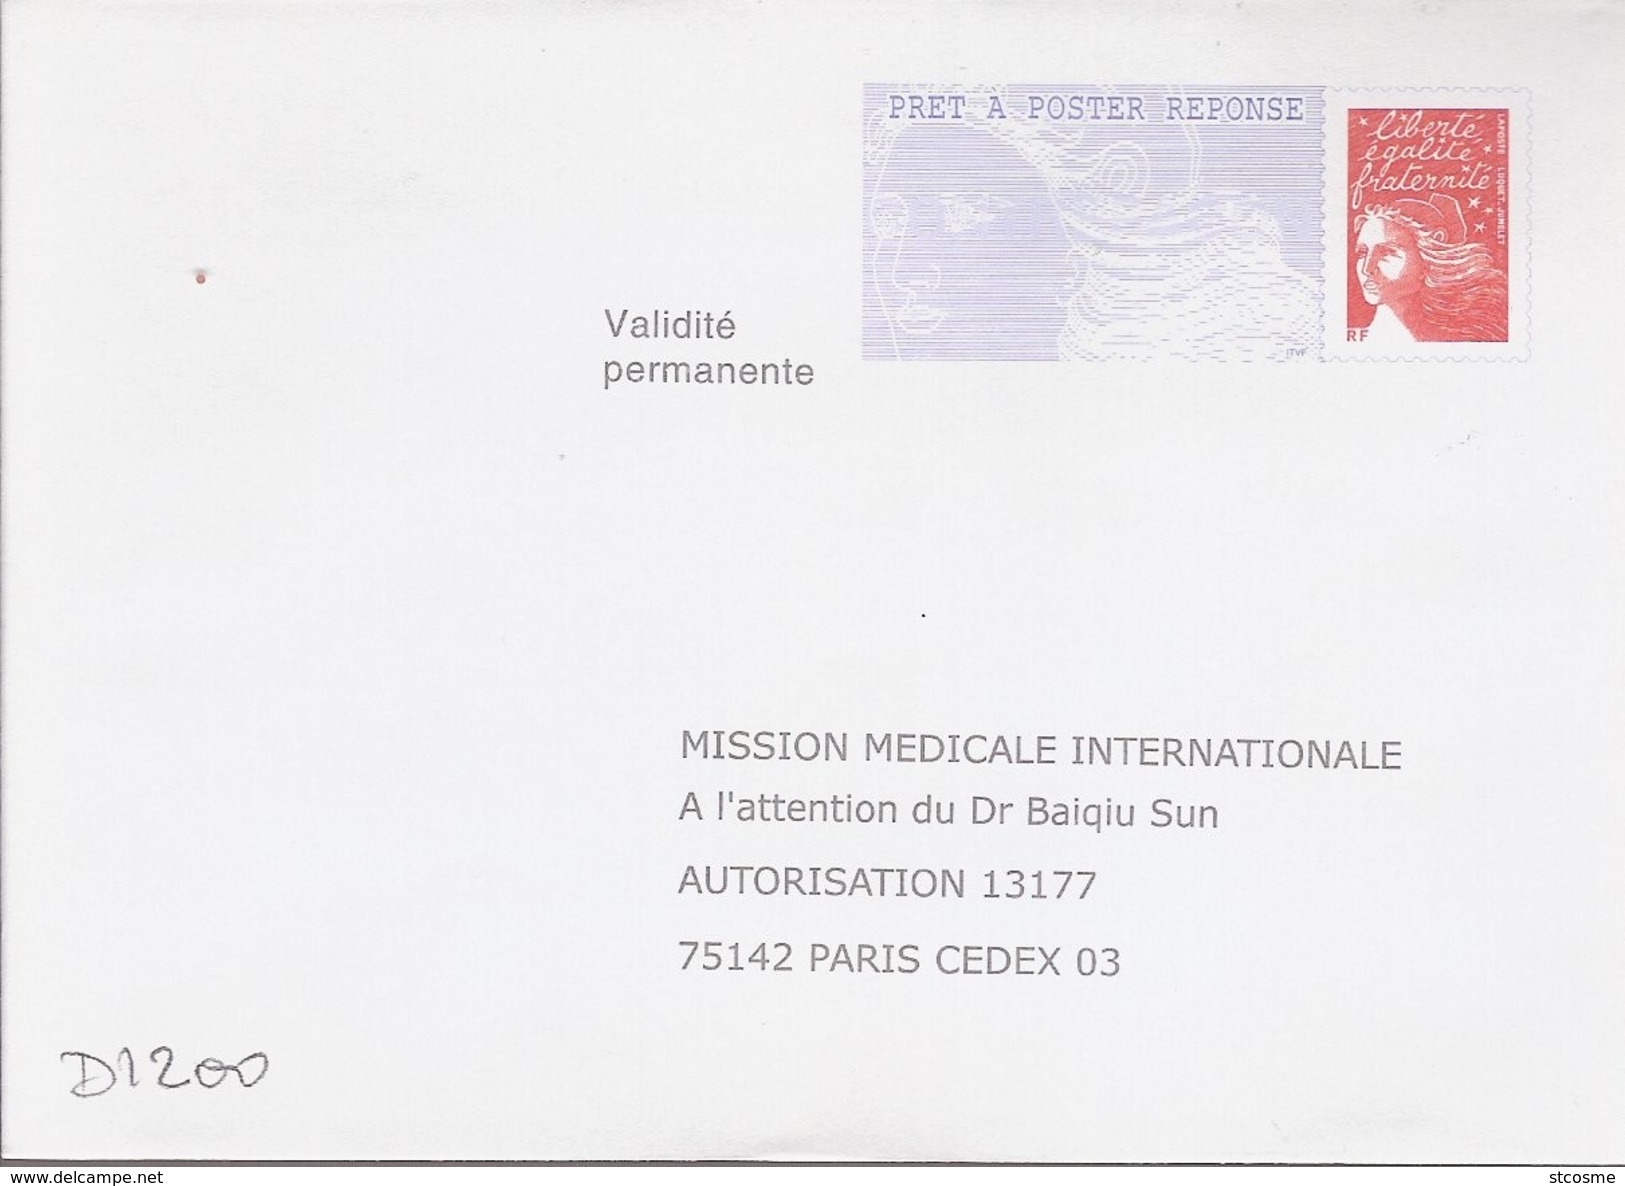 D1200 Entier / Stationery / PSE - PAP Réponse Luquet - Mission Médicale Internationale - N° D'agrément 0204500 - Prêts-à-poster:Answer/Luquet